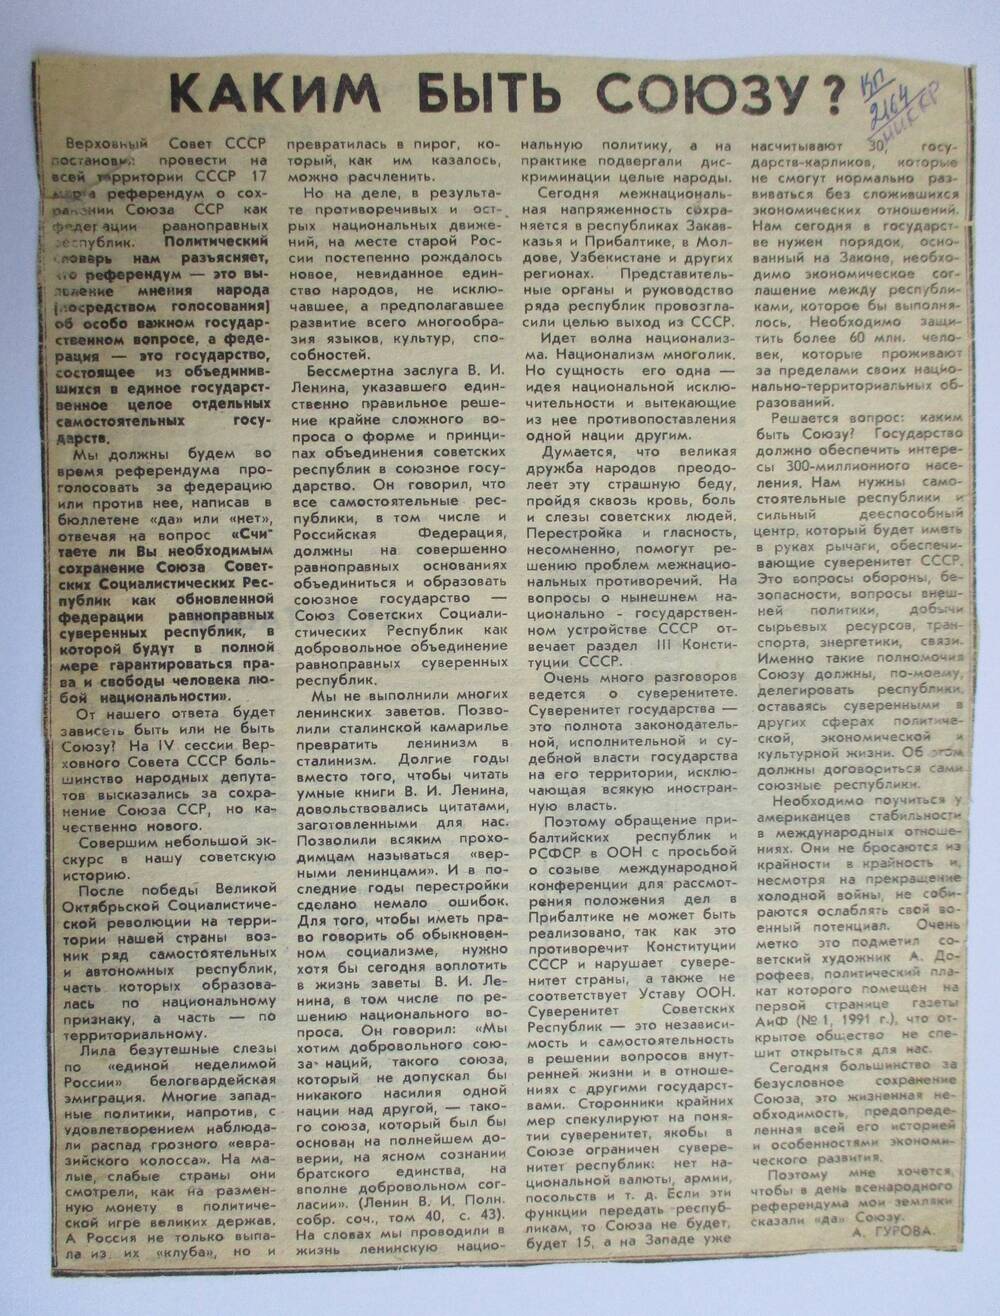 А.Гурова Каким быть Союзу? - статья из газеты Камская Новь, 1991г.